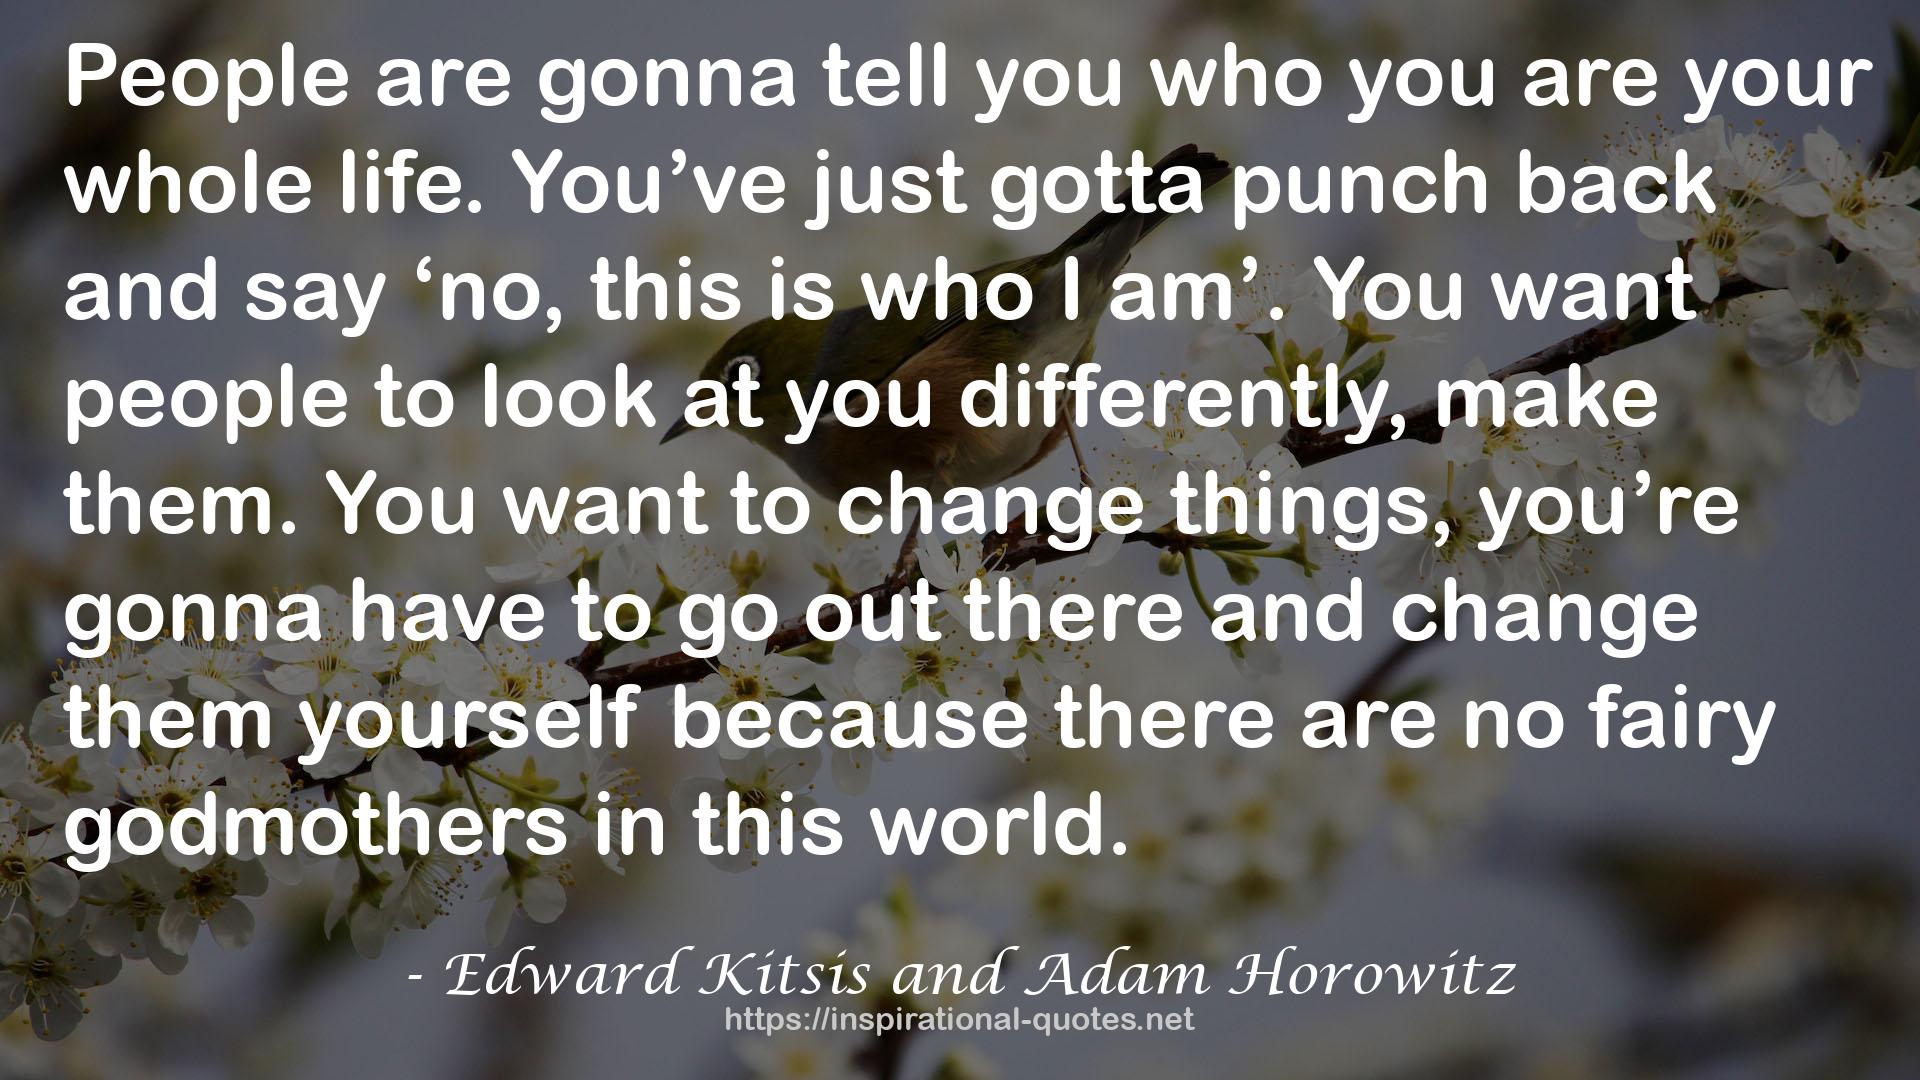 Edward Kitsis and Adam Horowitz QUOTES